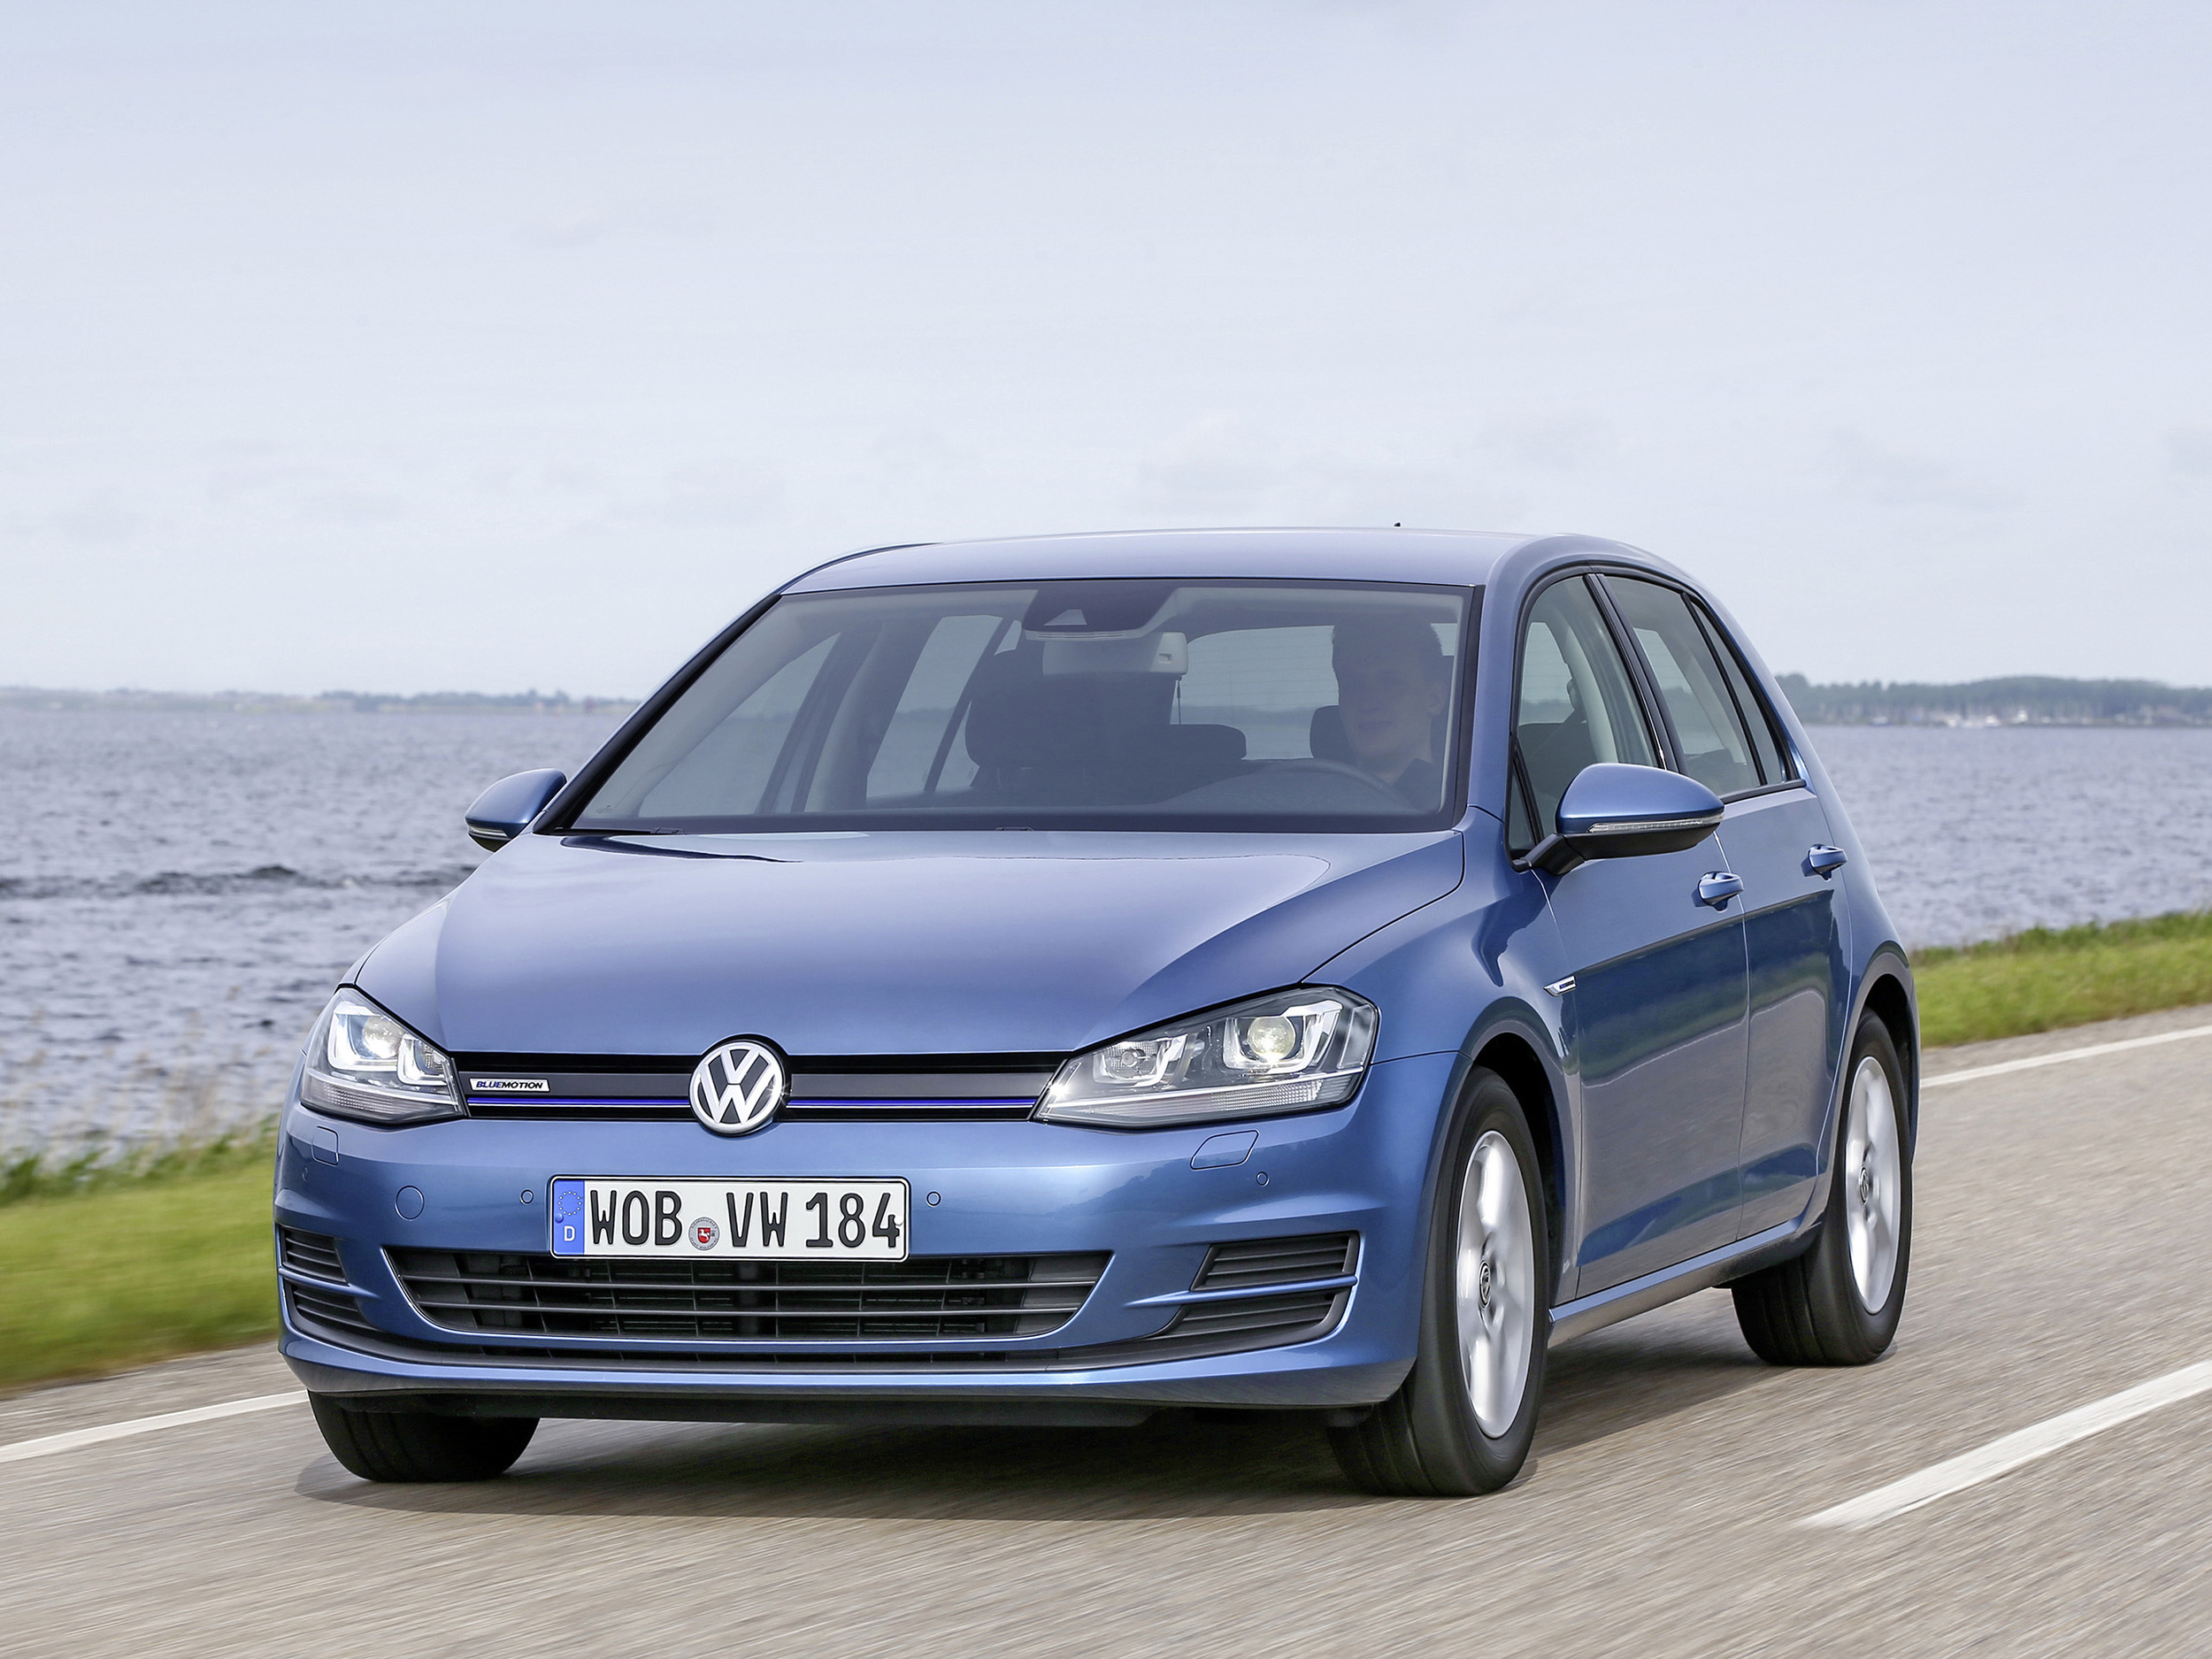 Volkswagen manipulated diesel emissions tests